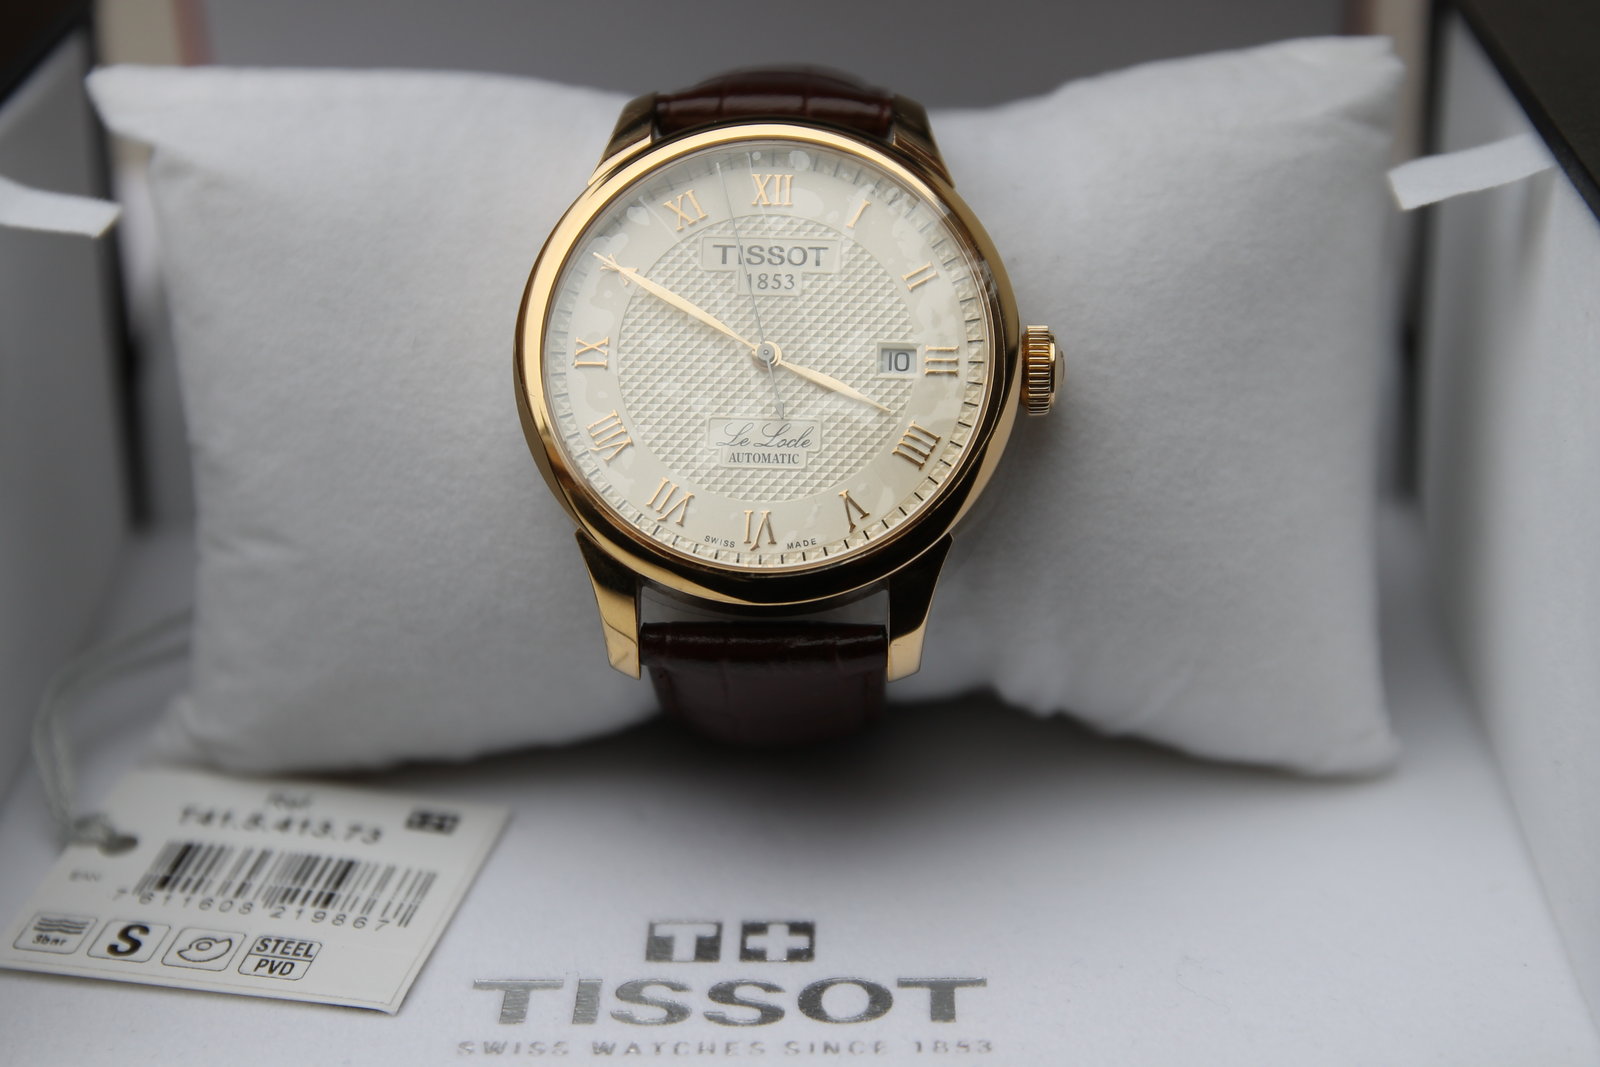 Đồng hồ nam Tissot 1853 T41.5.413.73 Automatic tại show room đồng hồ Tre Vàng